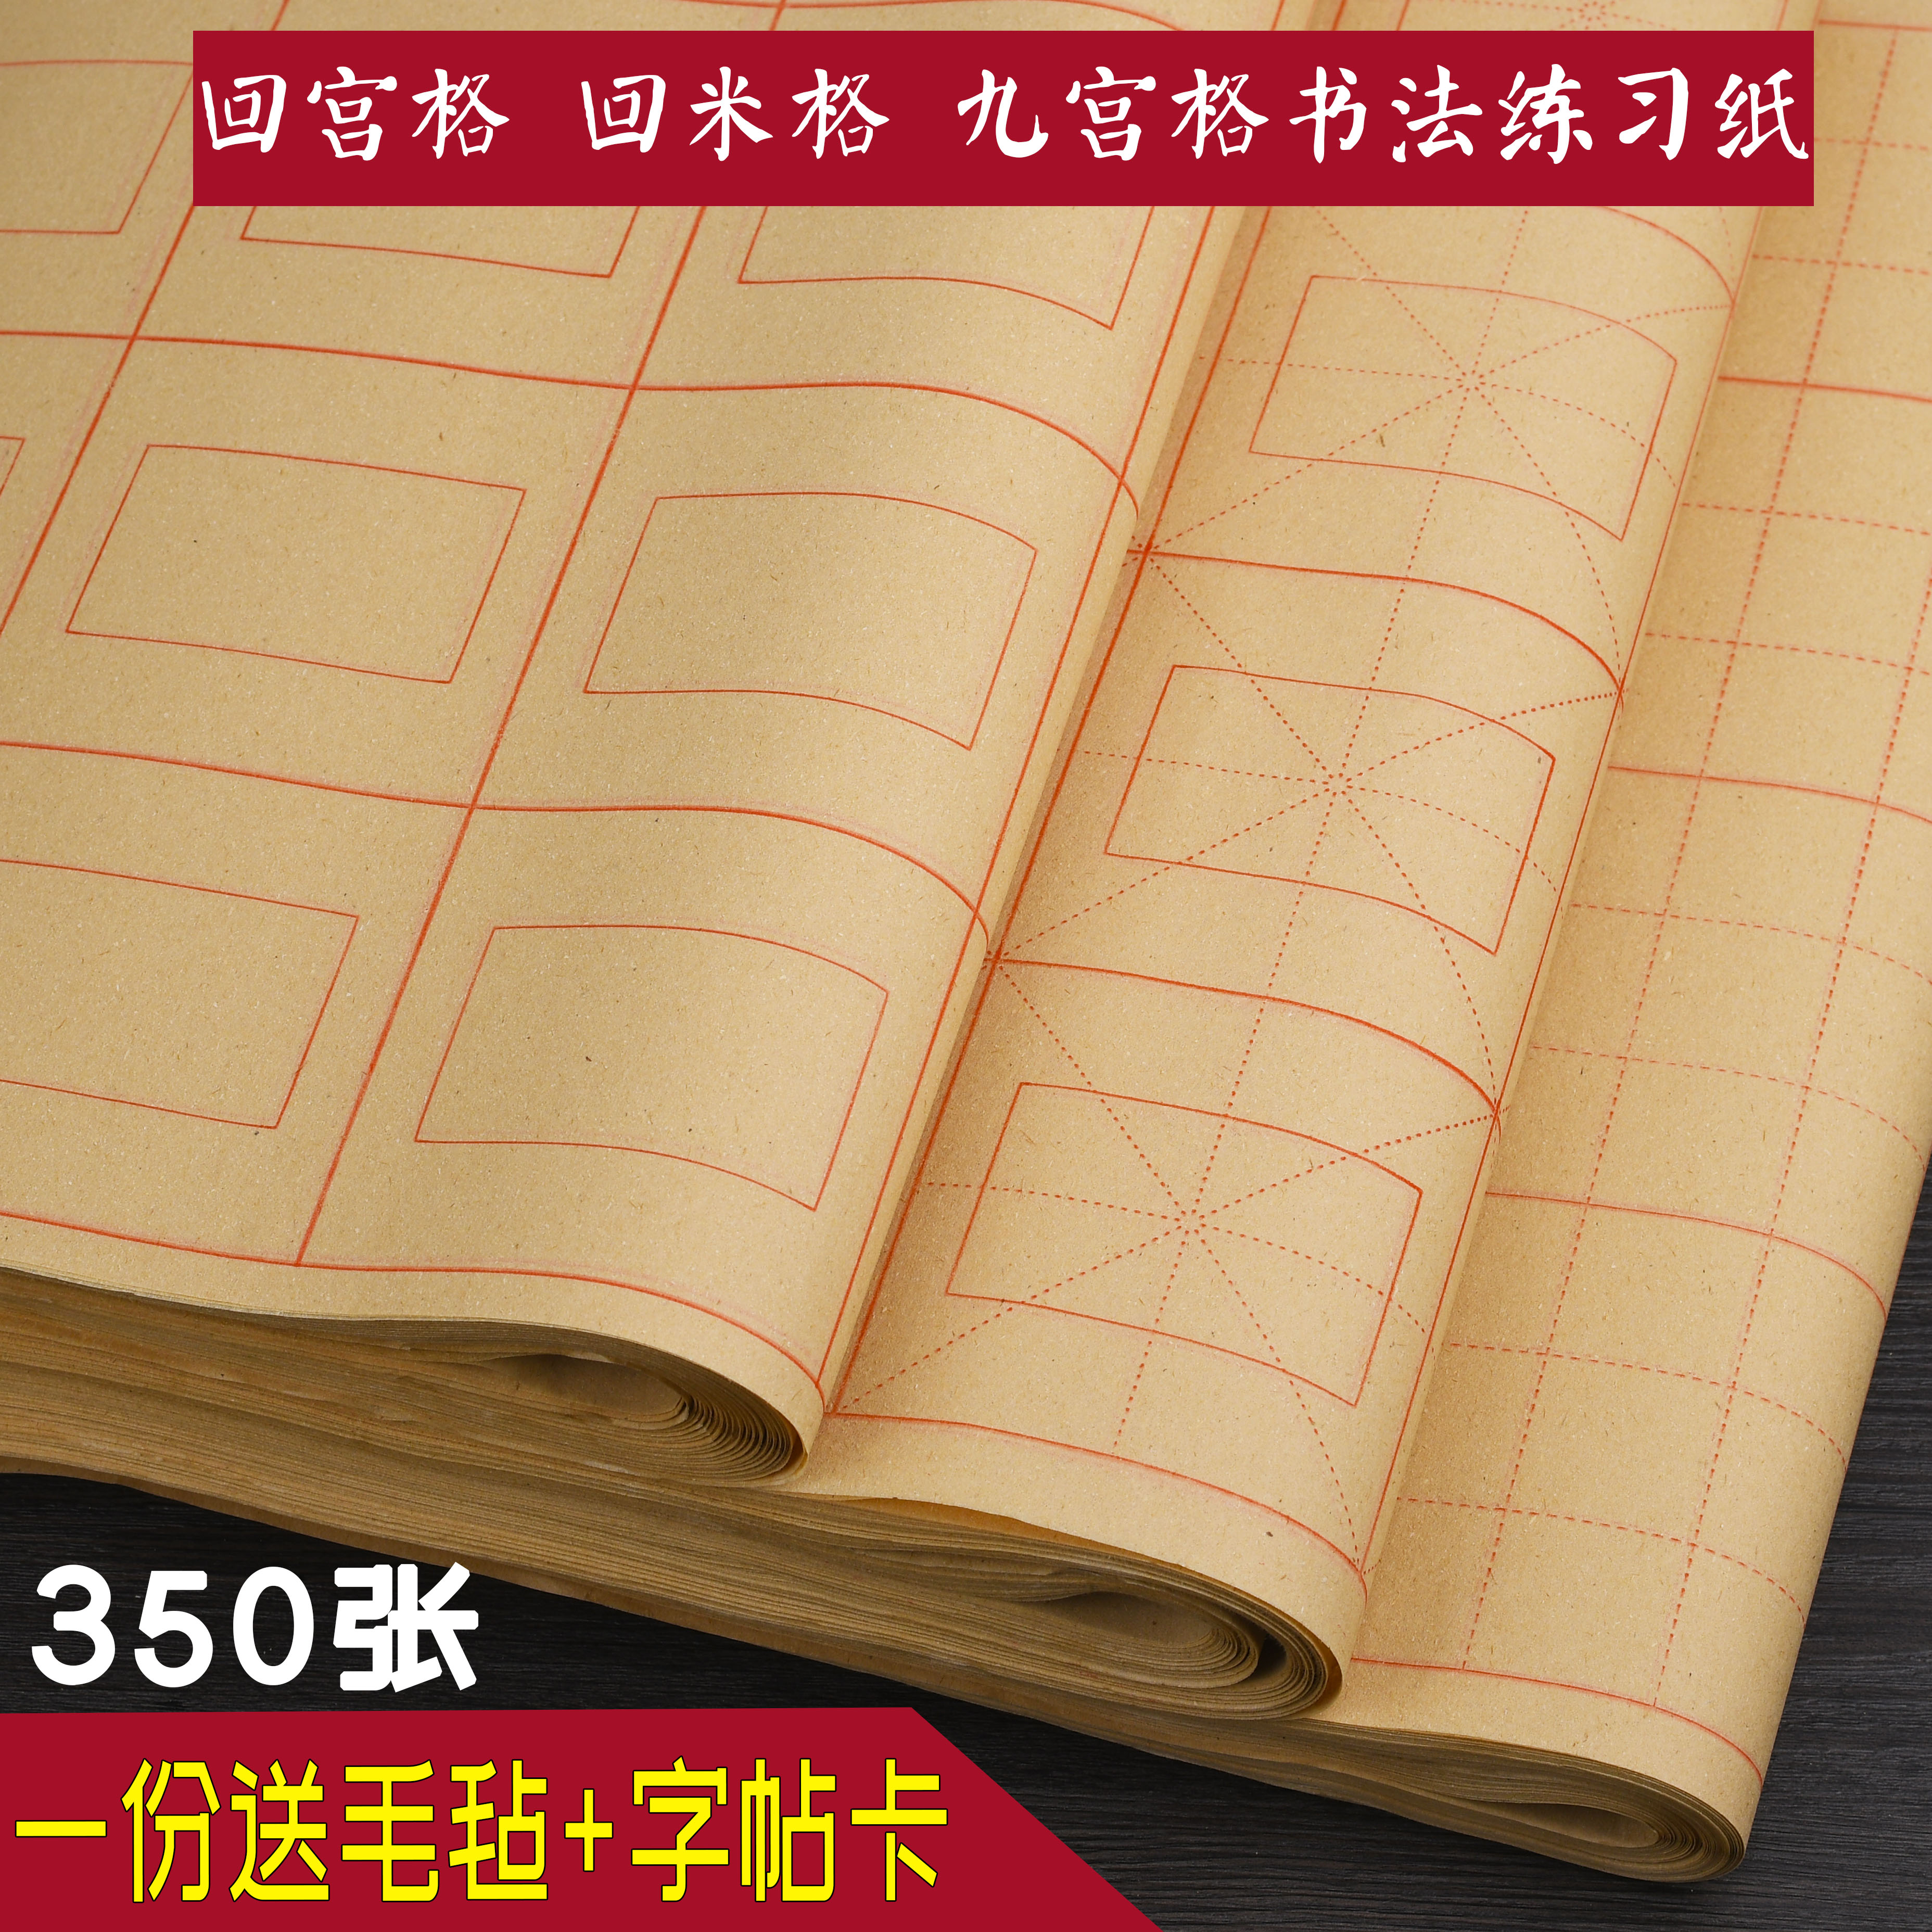 350张回宫格回米格九宫格米字格米格毛边纸书法初学练习纸半生熟